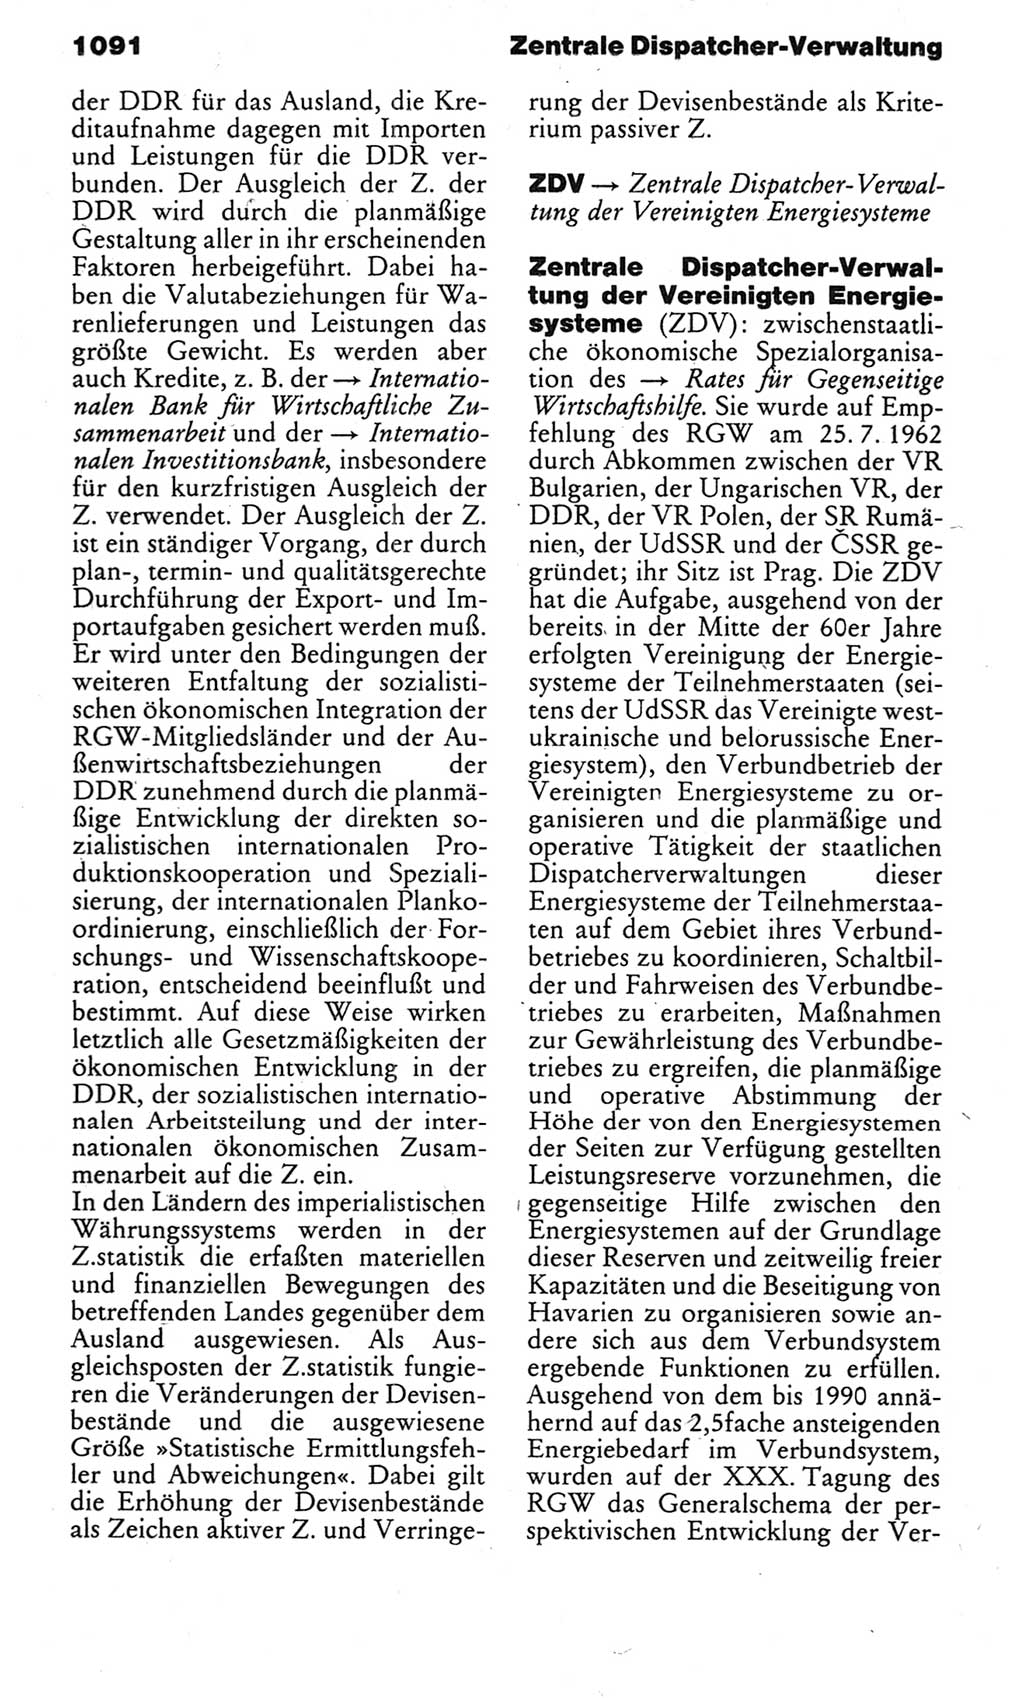 Kleines politisches Wörterbuch [Deutsche Demokratische Republik (DDR)] 1983, Seite 1091 (Kl. pol. Wb. DDR 1983, S. 1091)